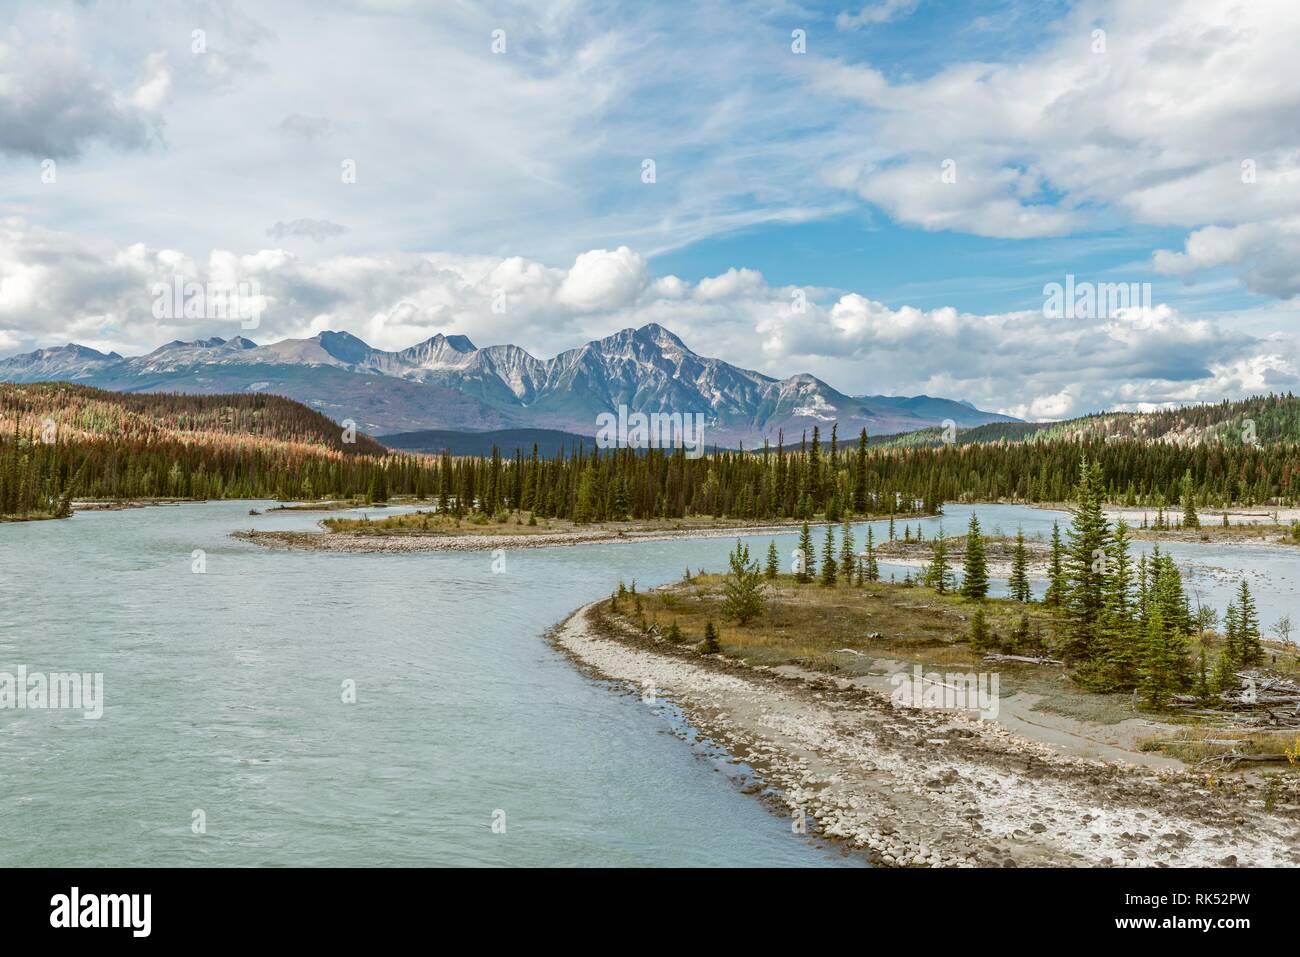 Vista sull'ampia vallata con fiume Athabasca River, torna montagne, Icefields Parkway, Jasper National Park, Alberta, Canada, America del Nord Foto Stock